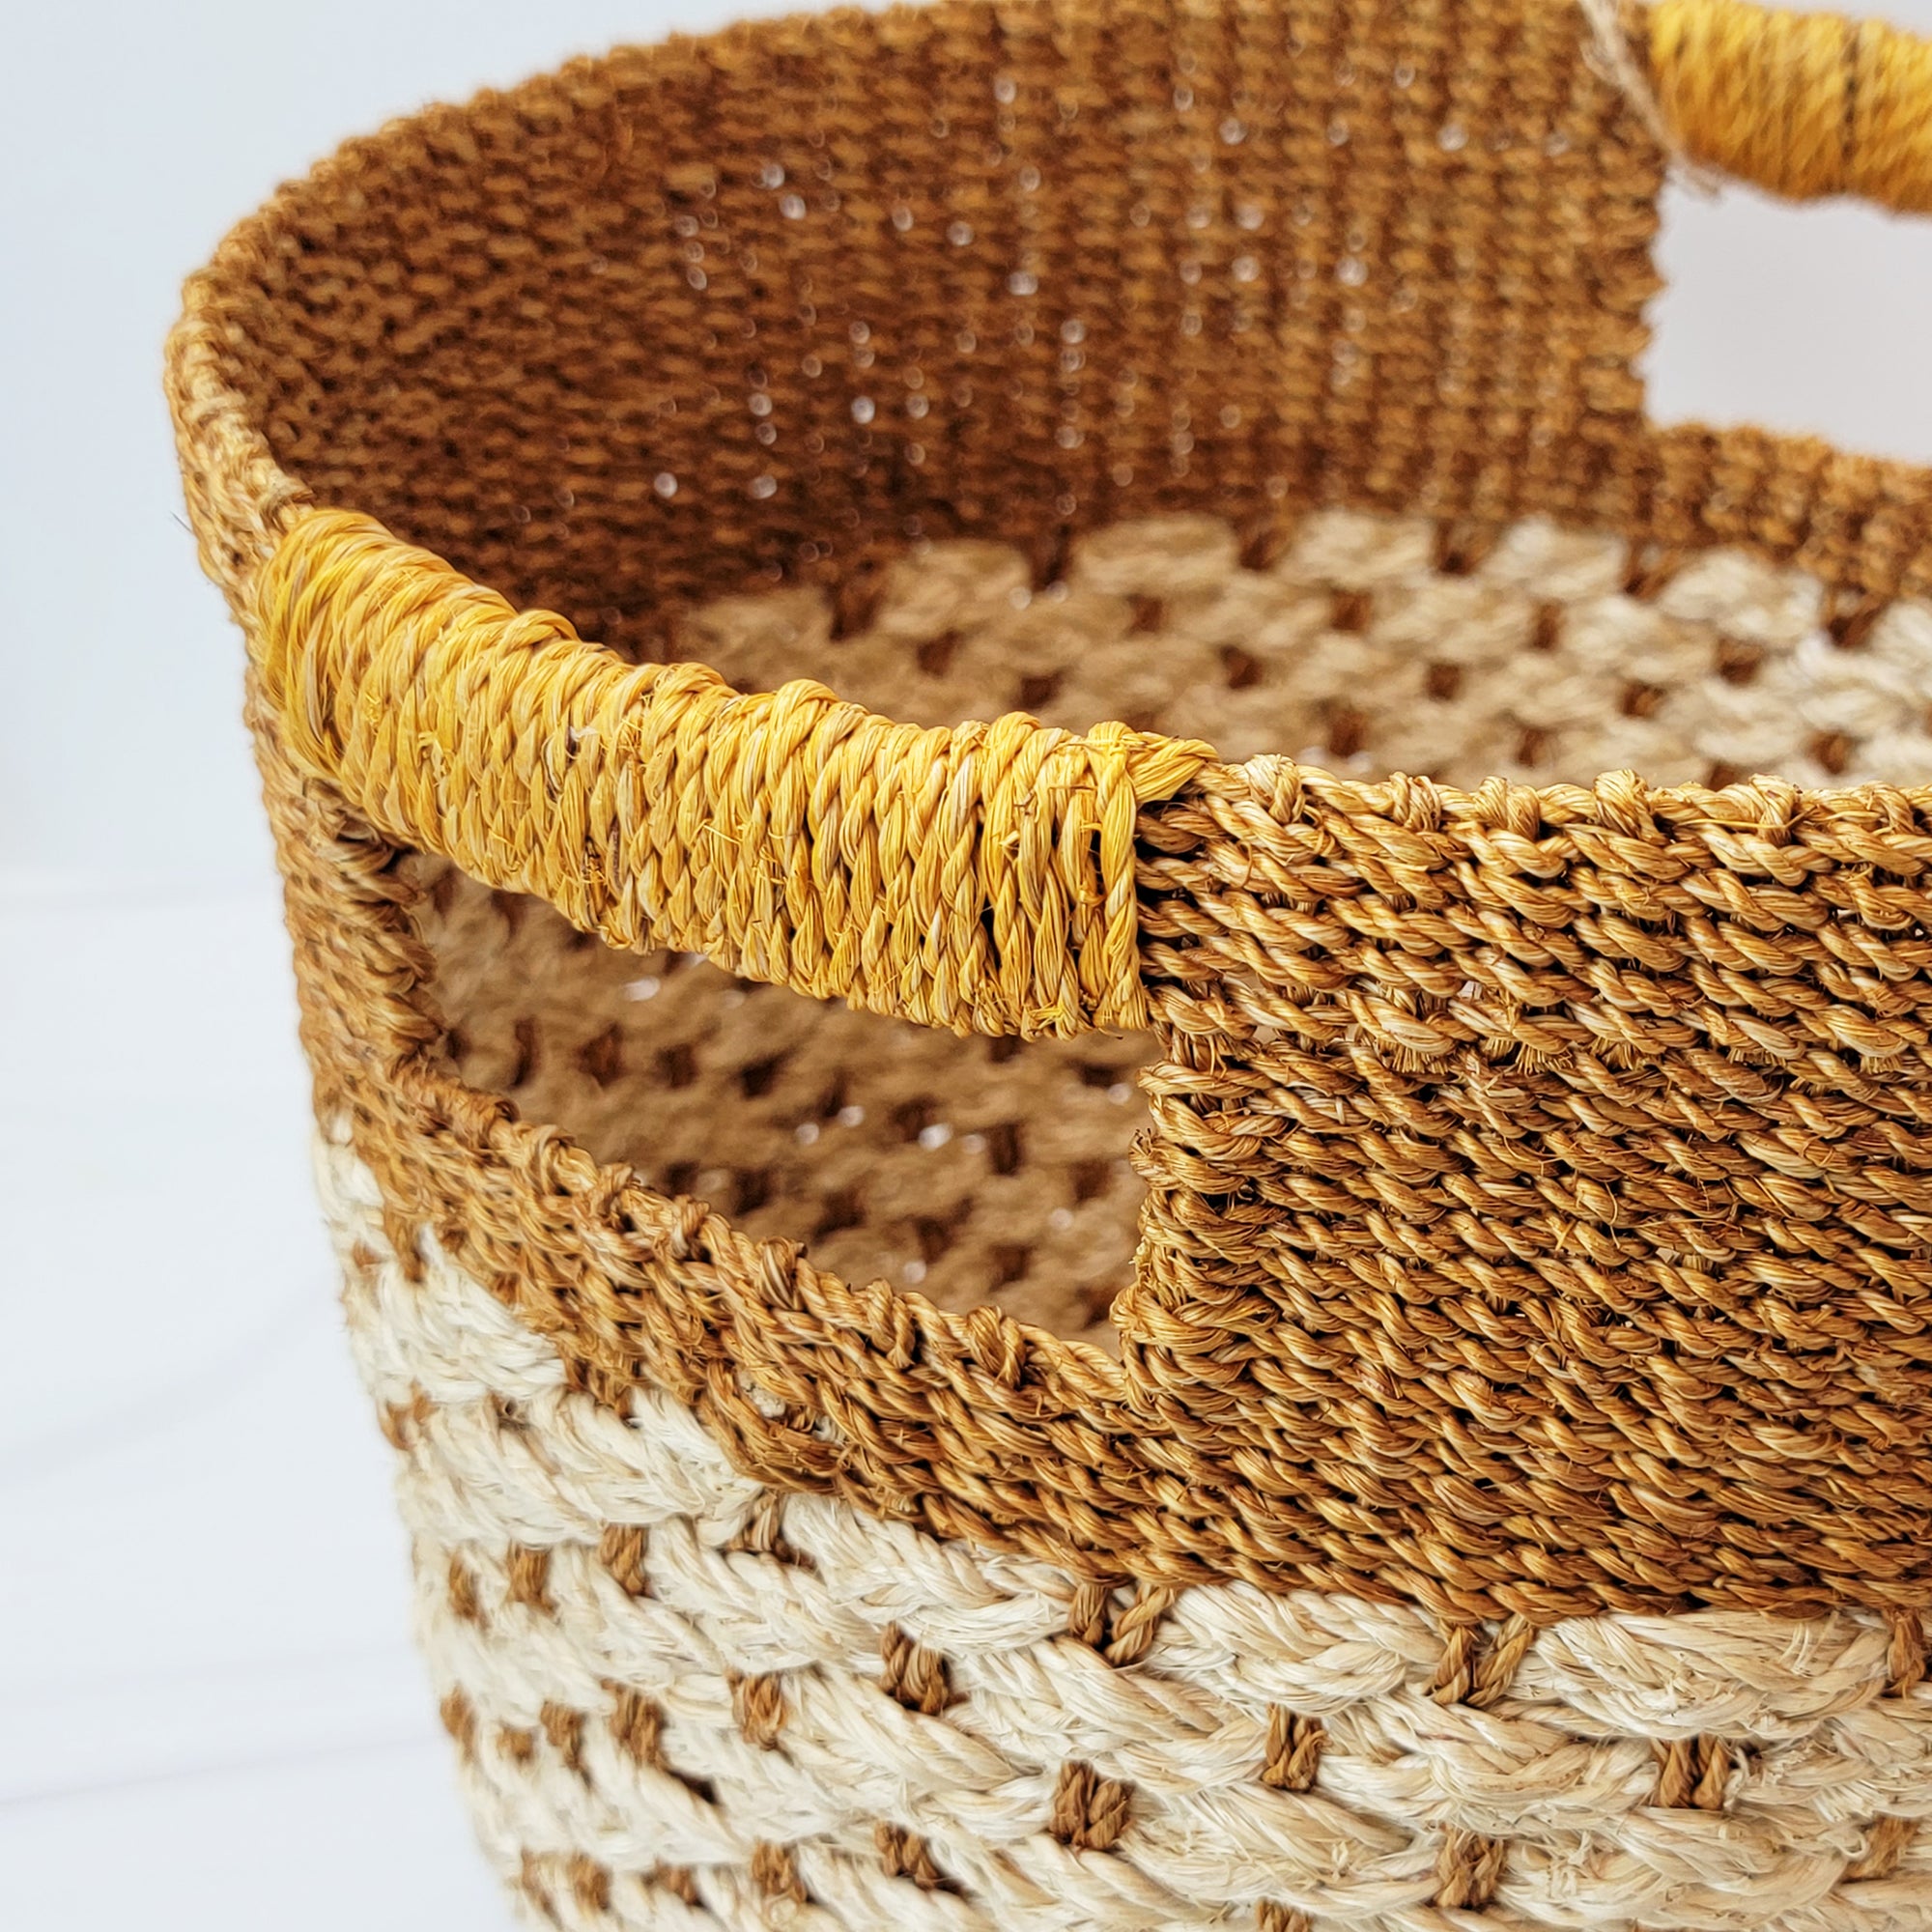 Caramel and natural hemp basket